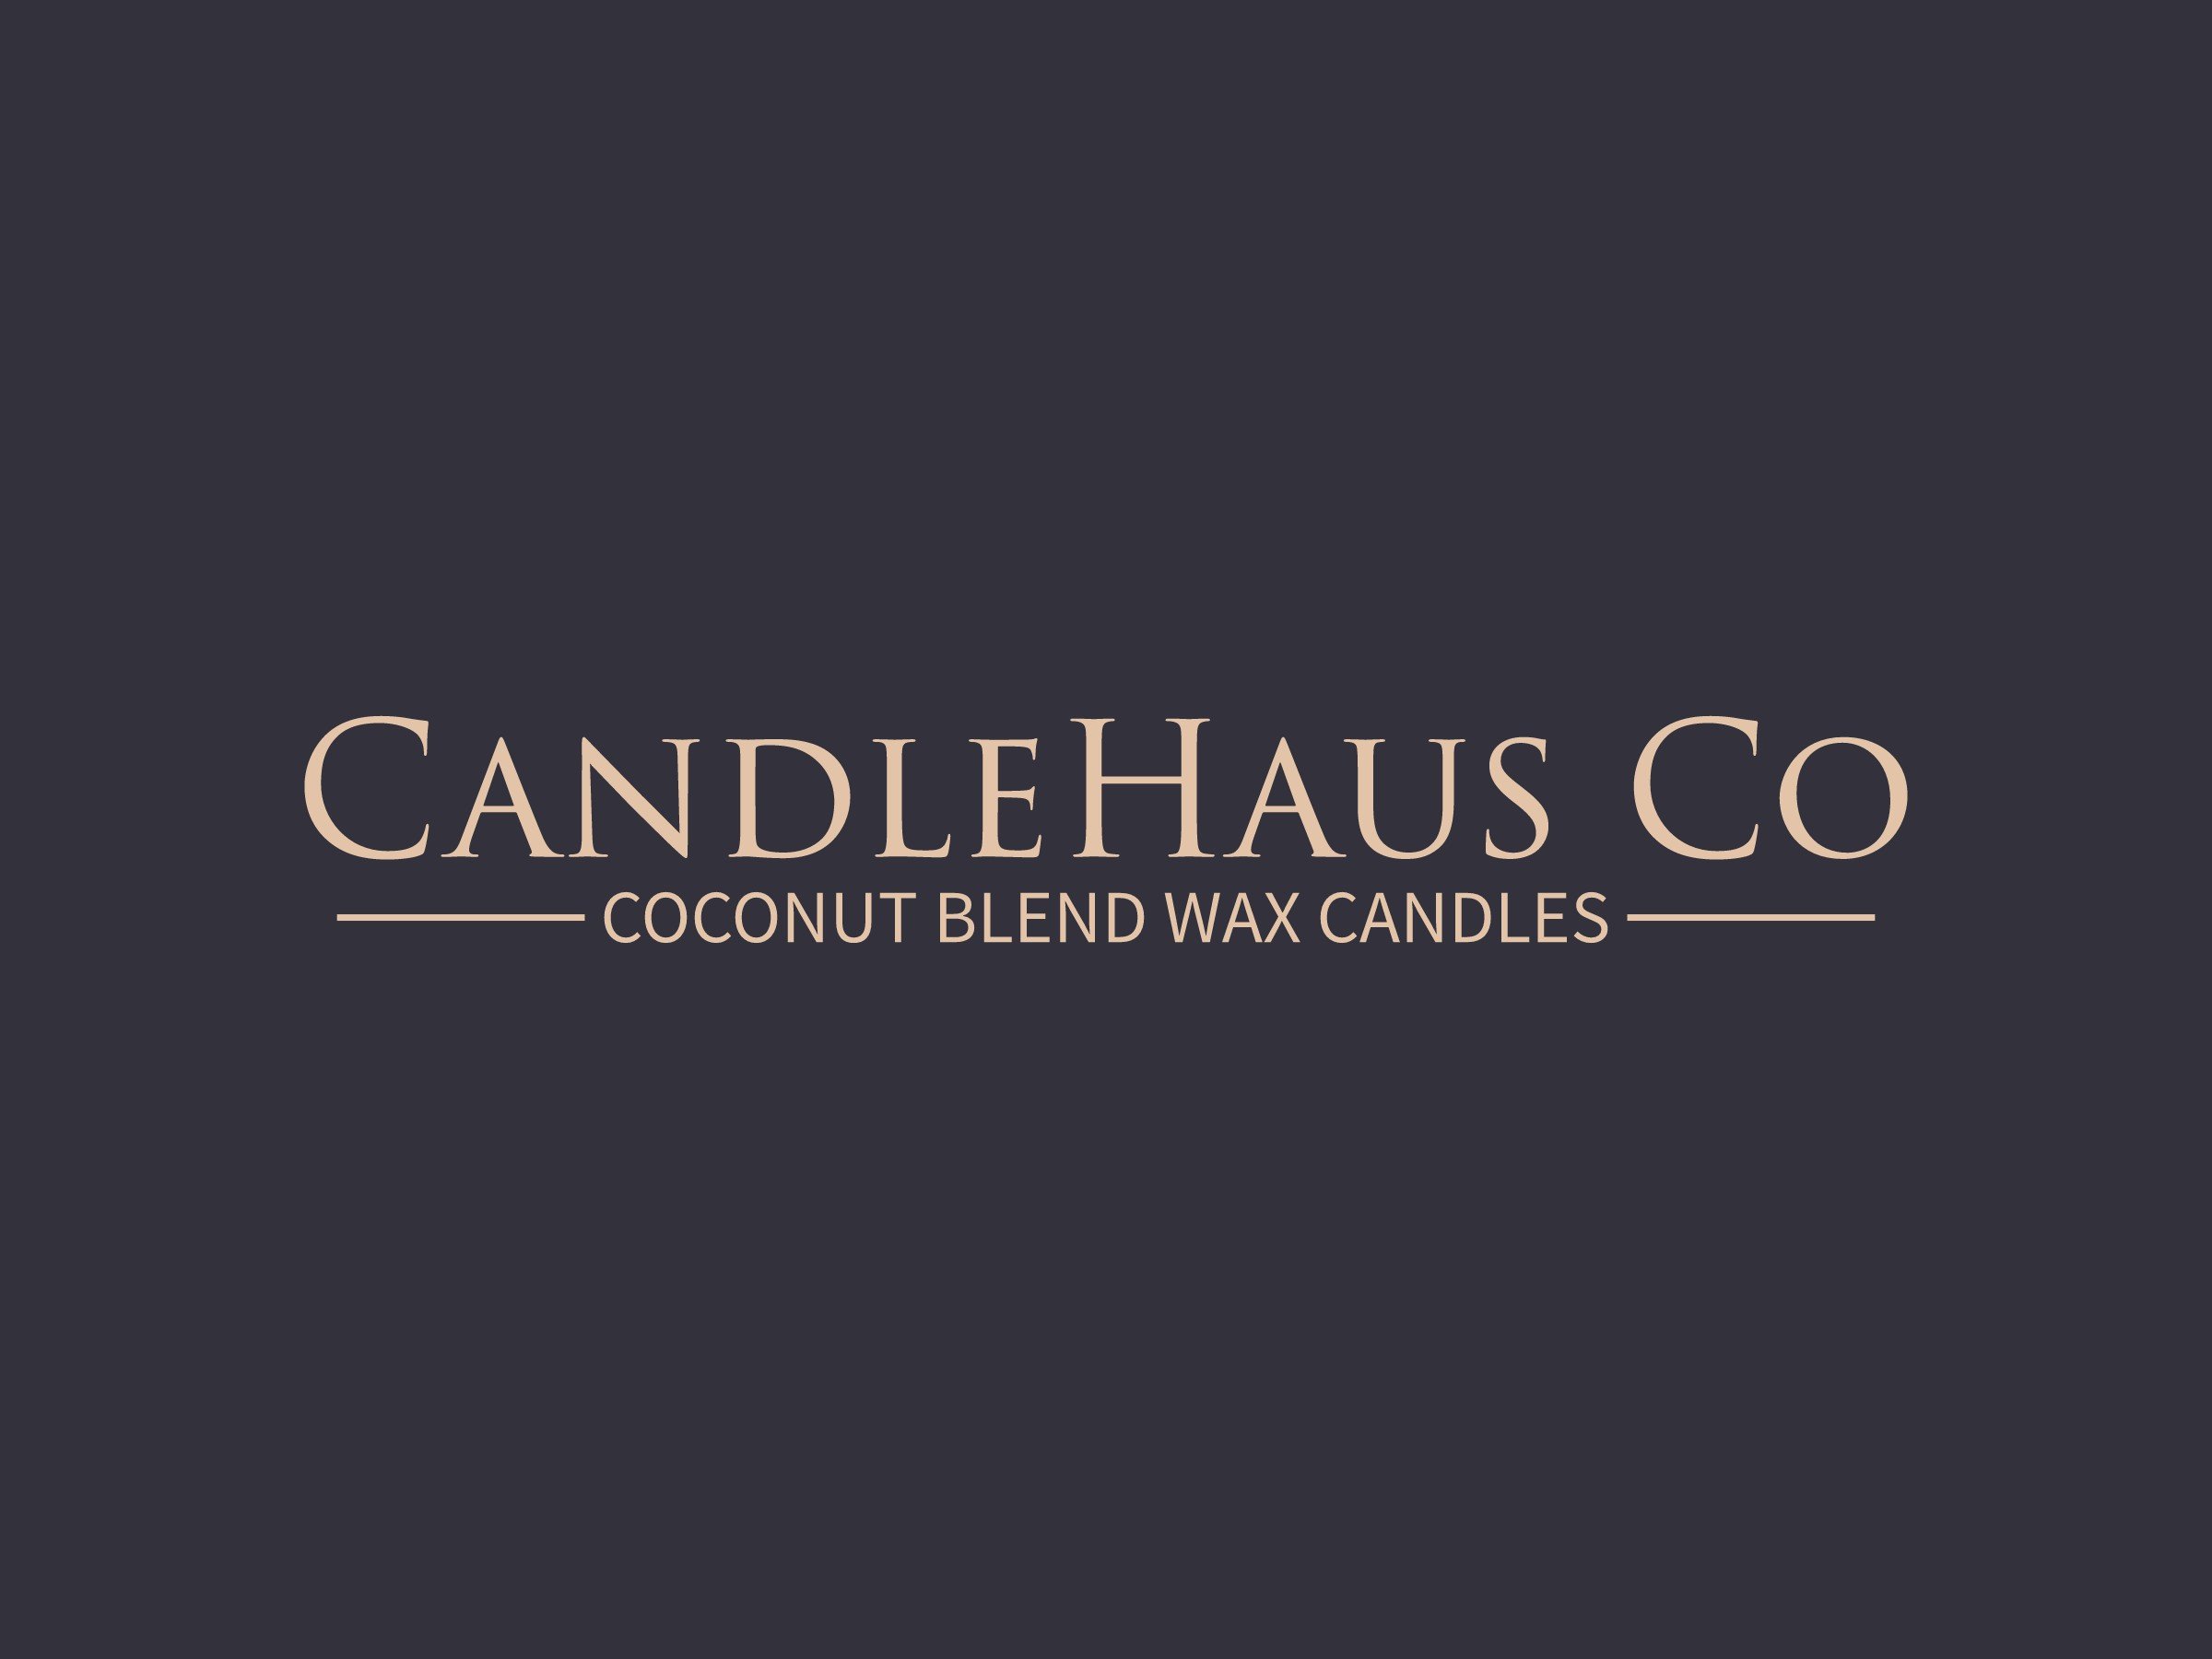 CandleHaus Co logo design